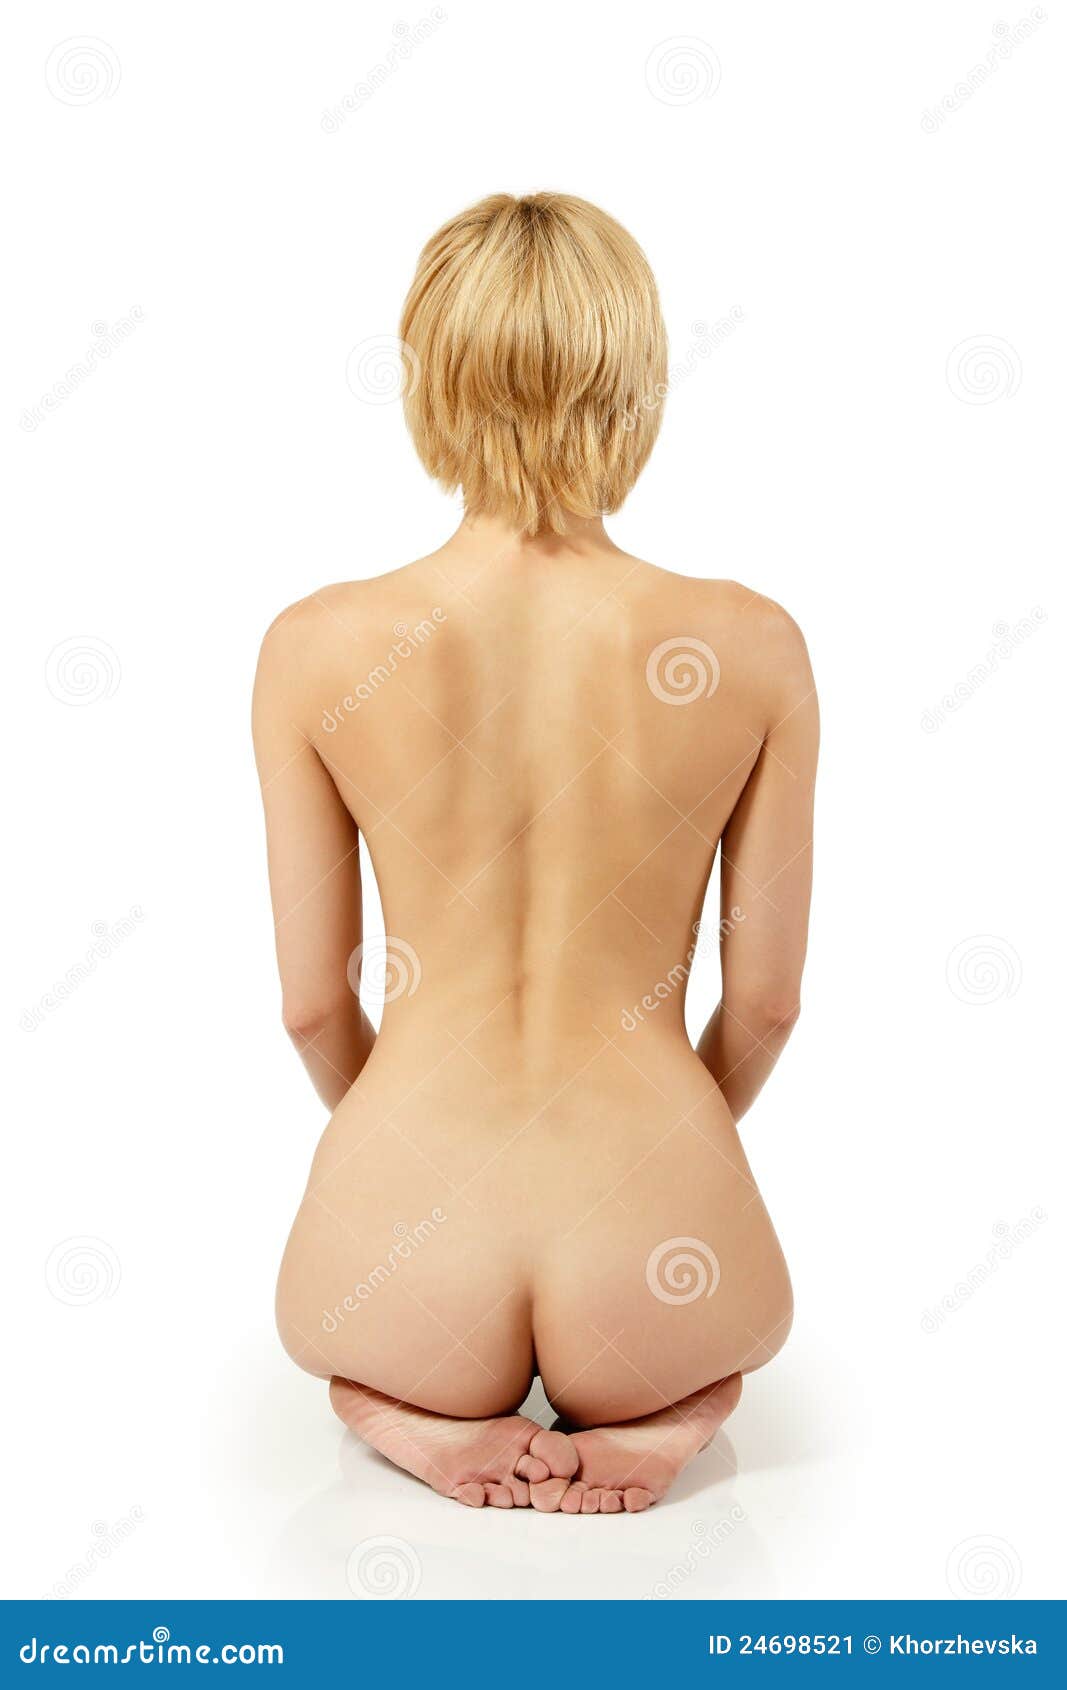 camille hartmann share nude woman on back photos